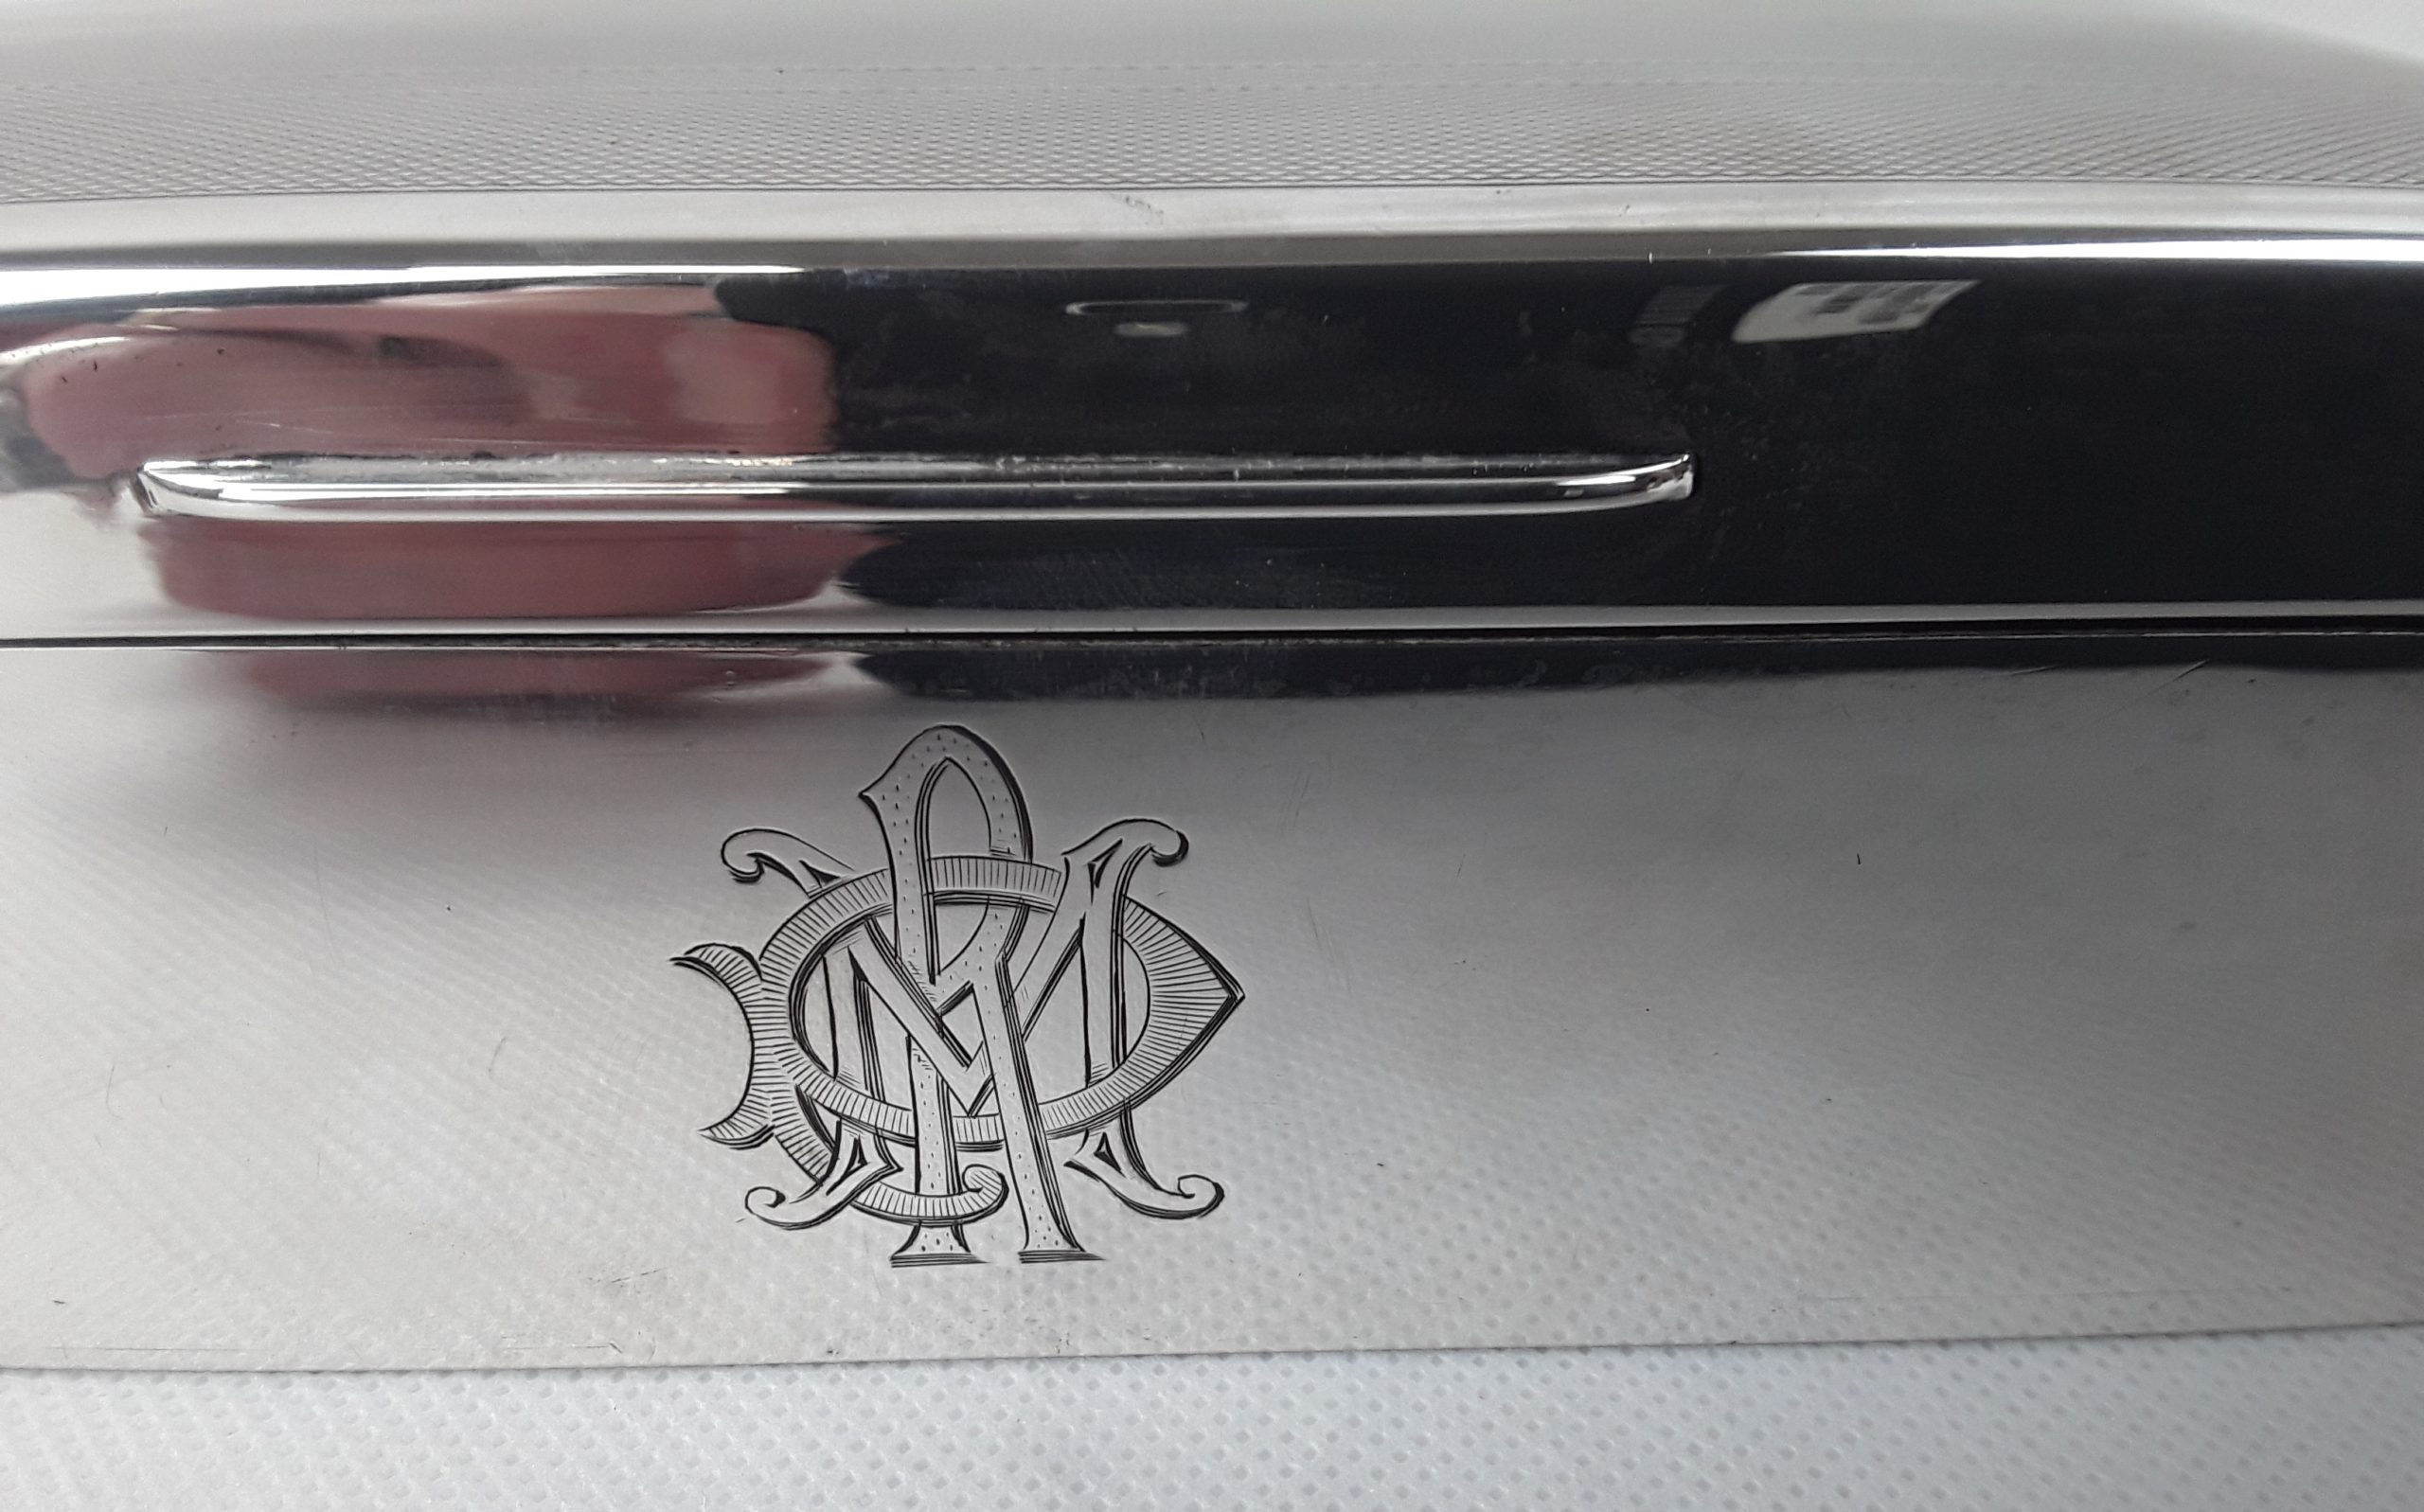 Sterling Silver Cigarette Case. Goldsmith F.C. - IB05403